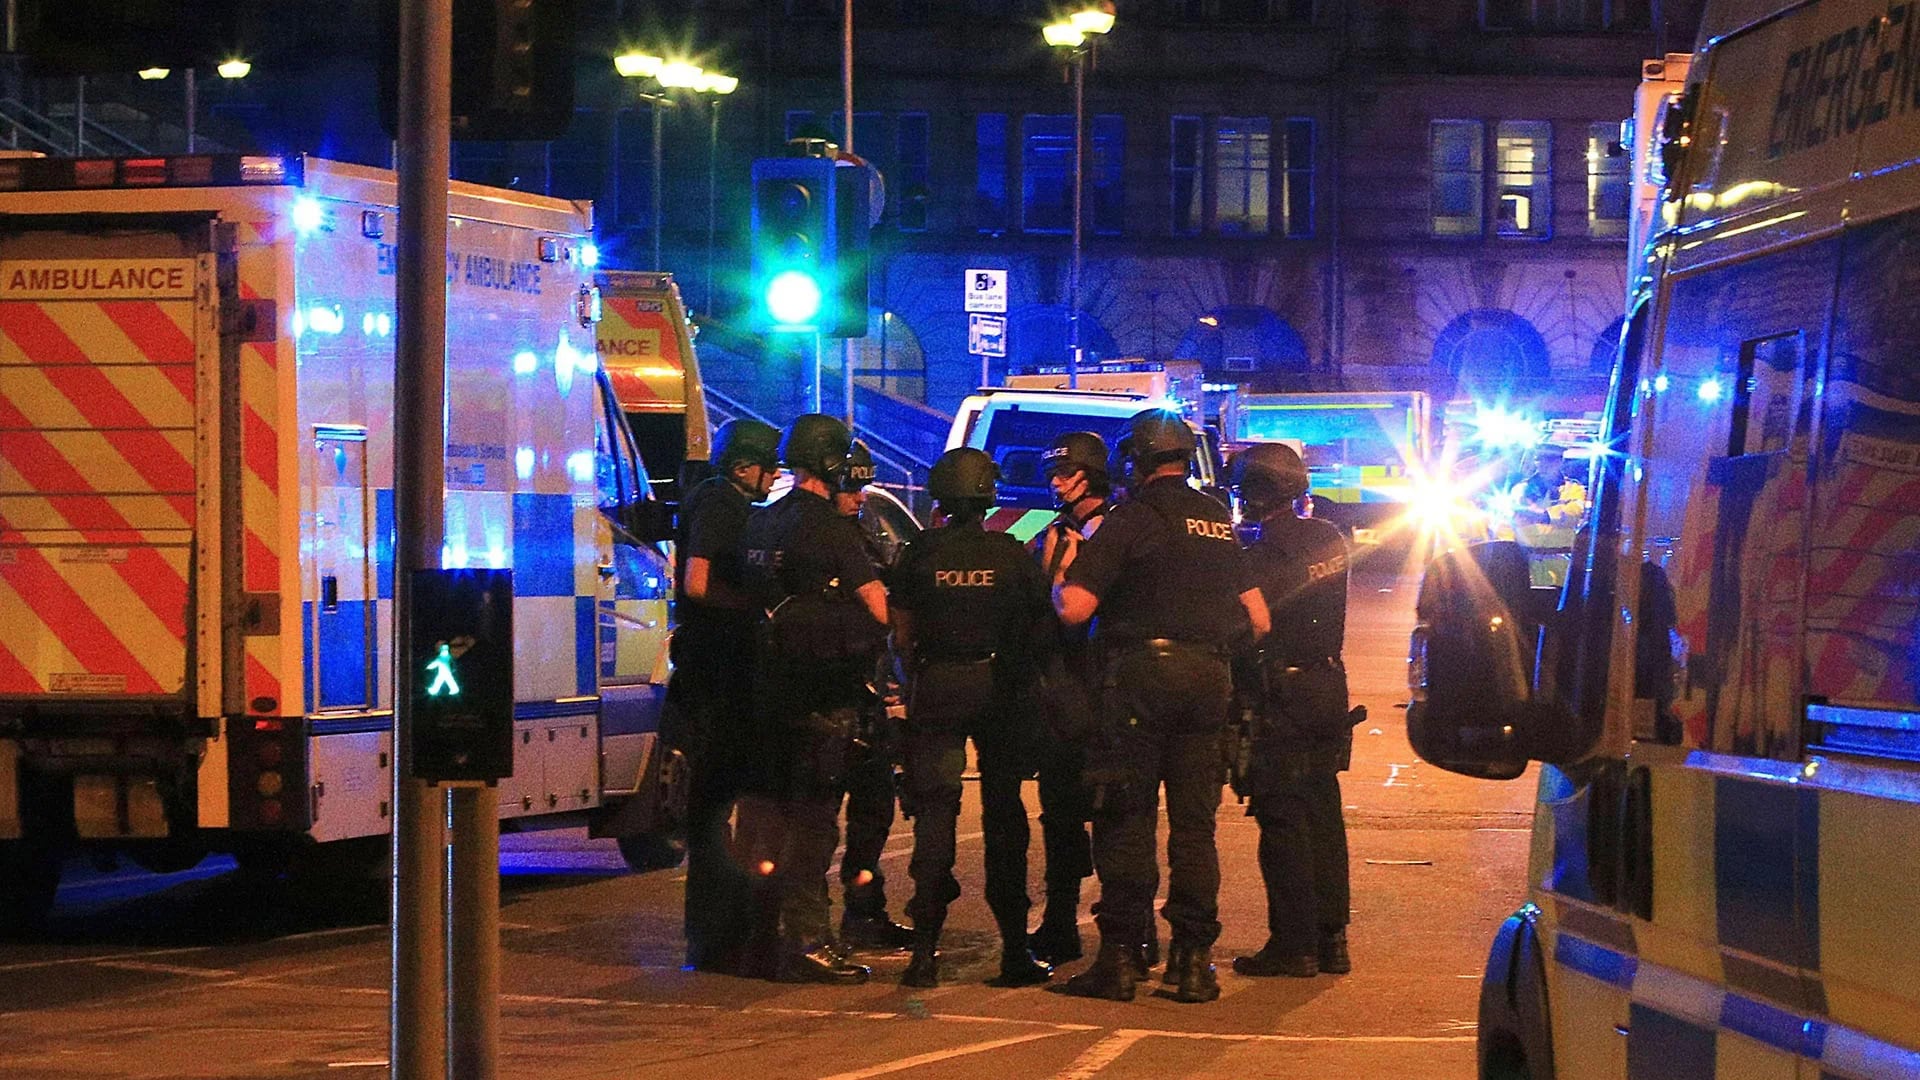 La policía de transporte de Gran Bretaña confirmó que el incidente en Manchester dejó al menos 19 muertos y 50 heridos (AP)